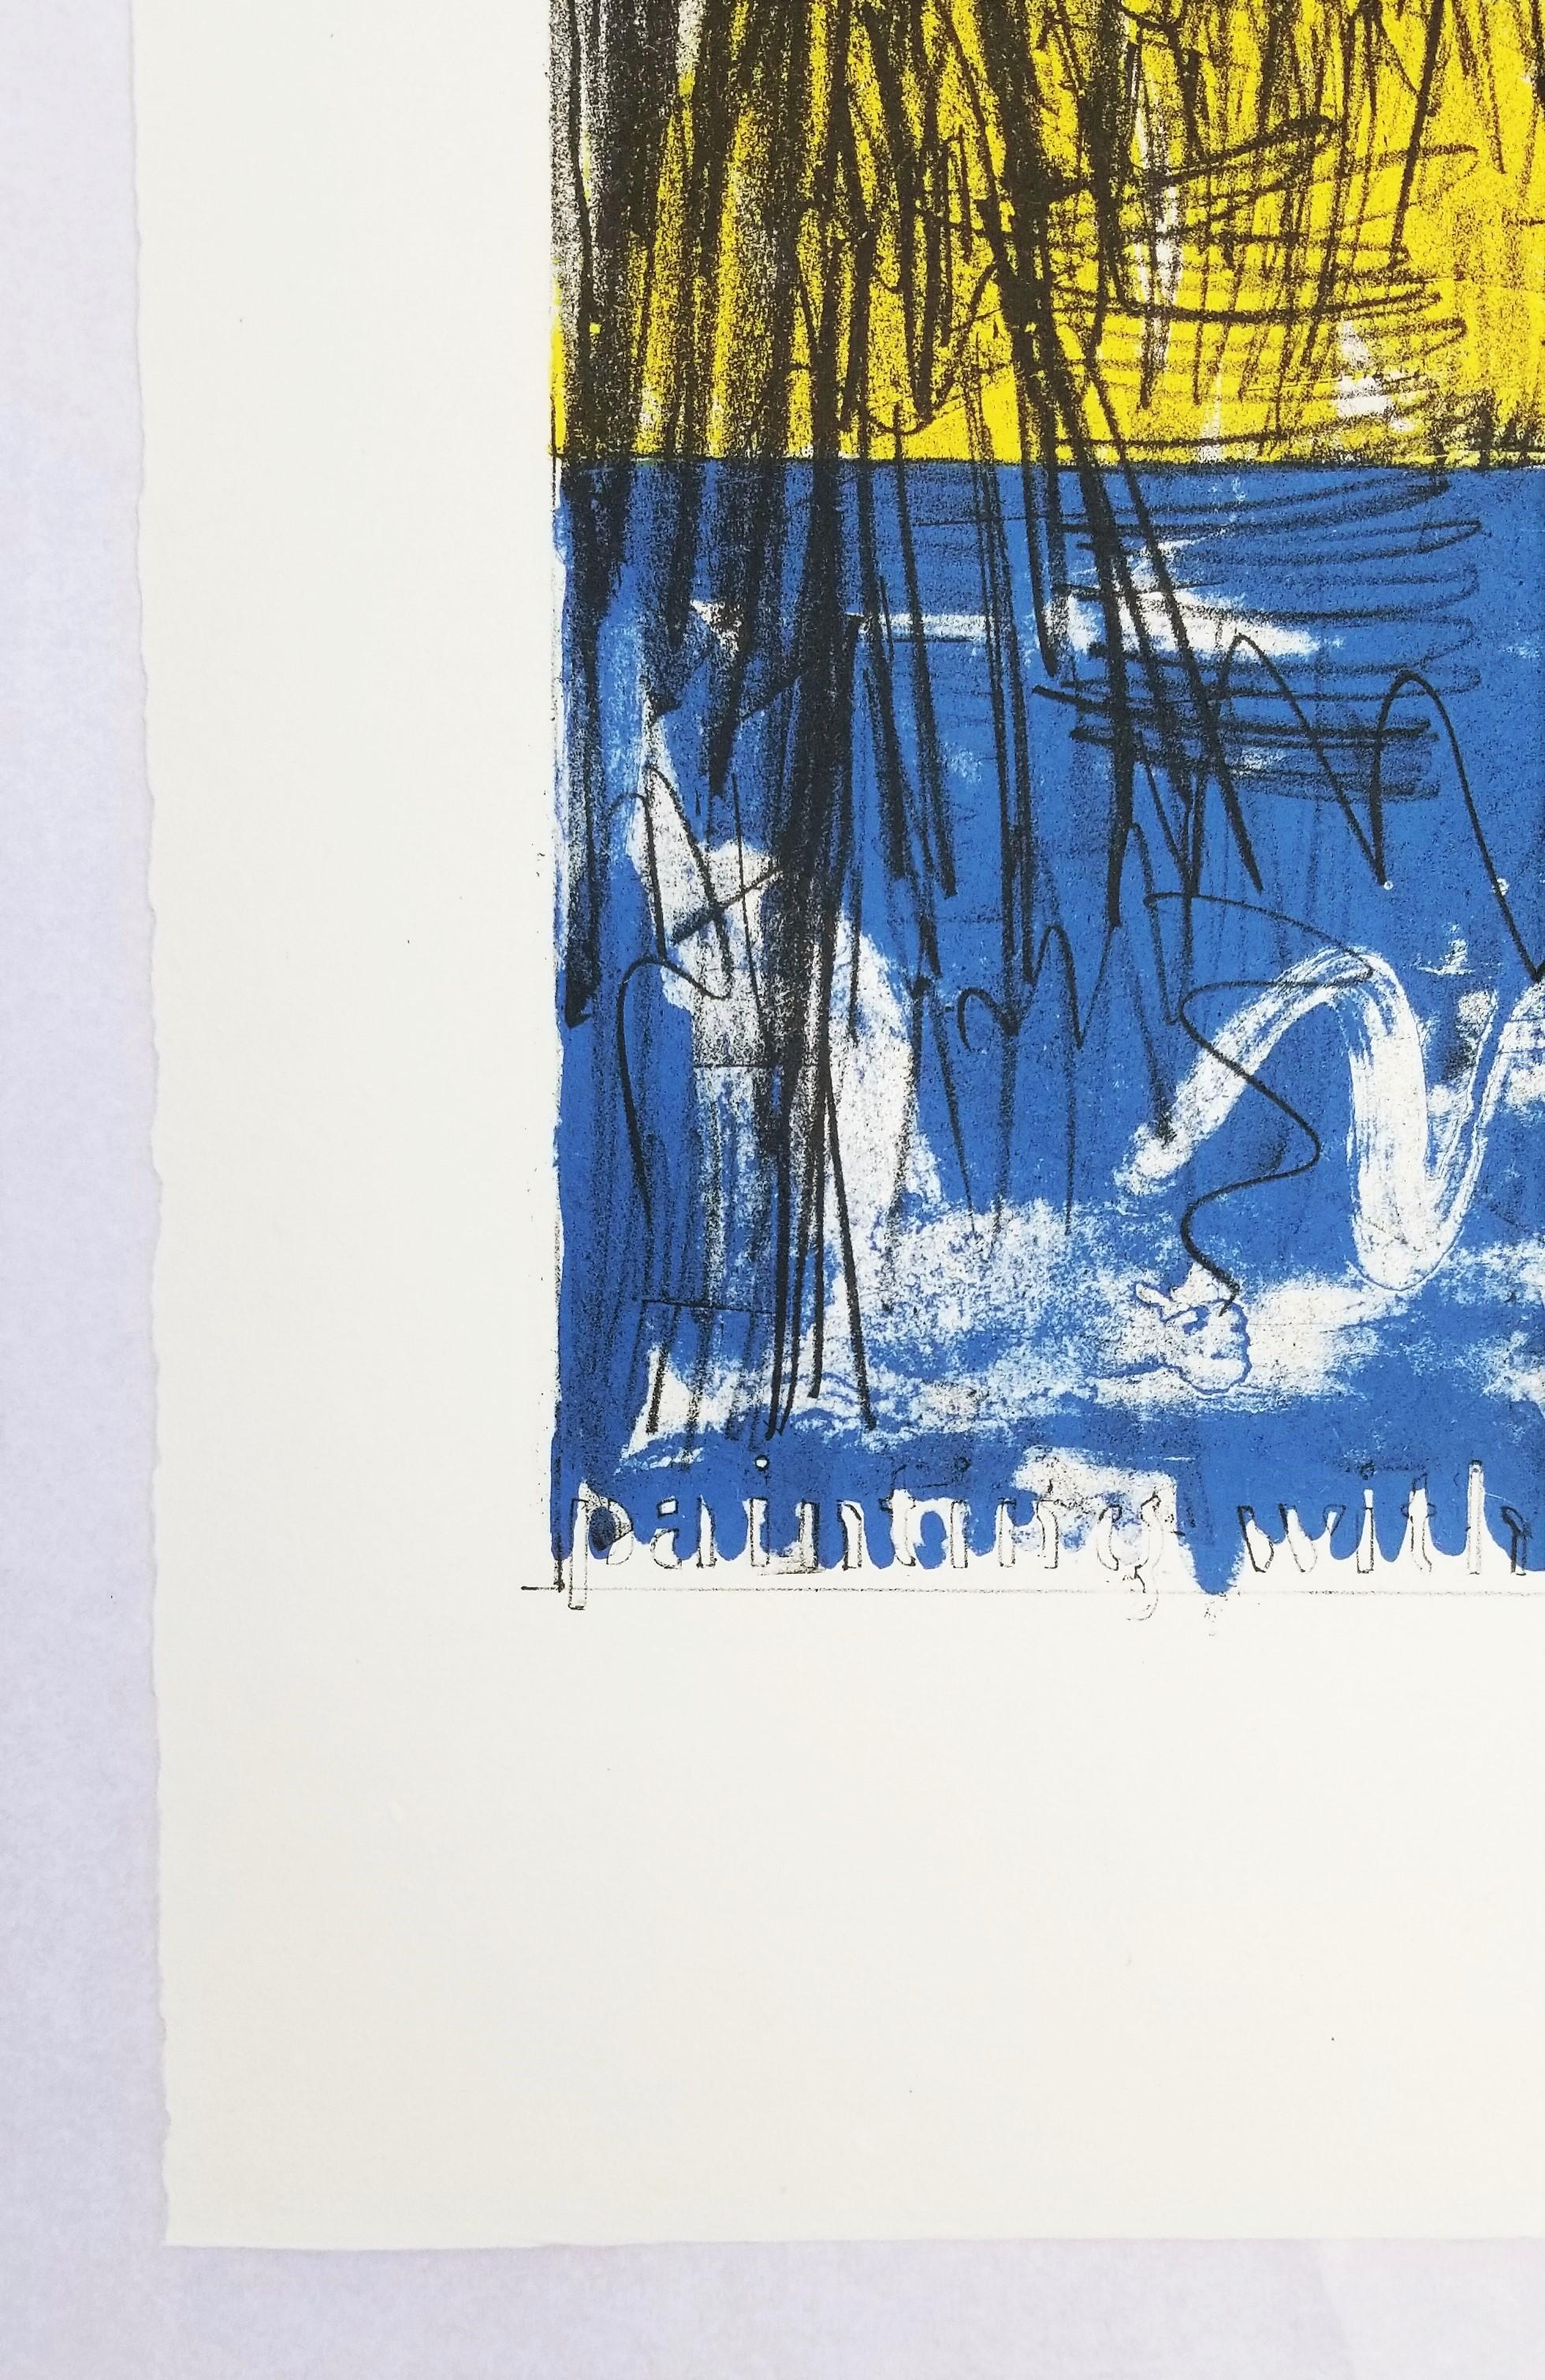 Artist: (after) Jasper Johns (American, 1930-)
Title: 